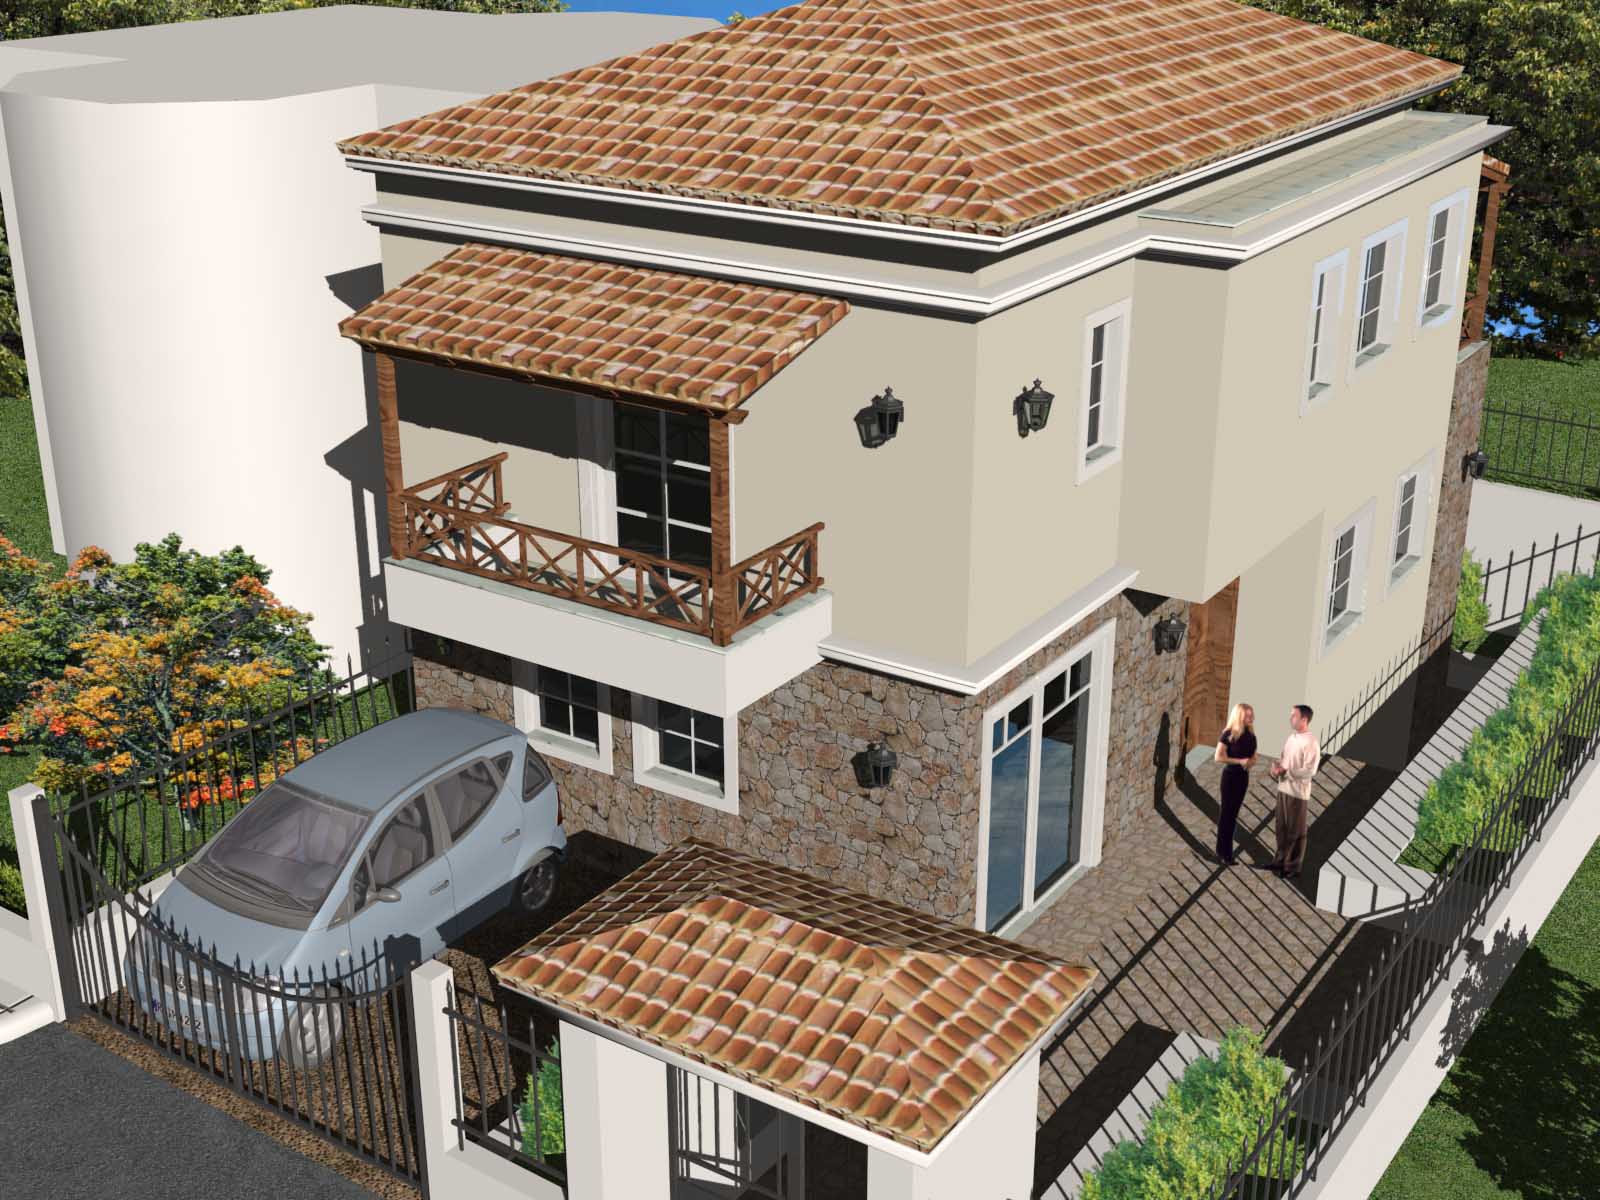 διώροφη μονοκατοικία σύμμεικτη μεταλλική κατασκευή από 790 € / μ2